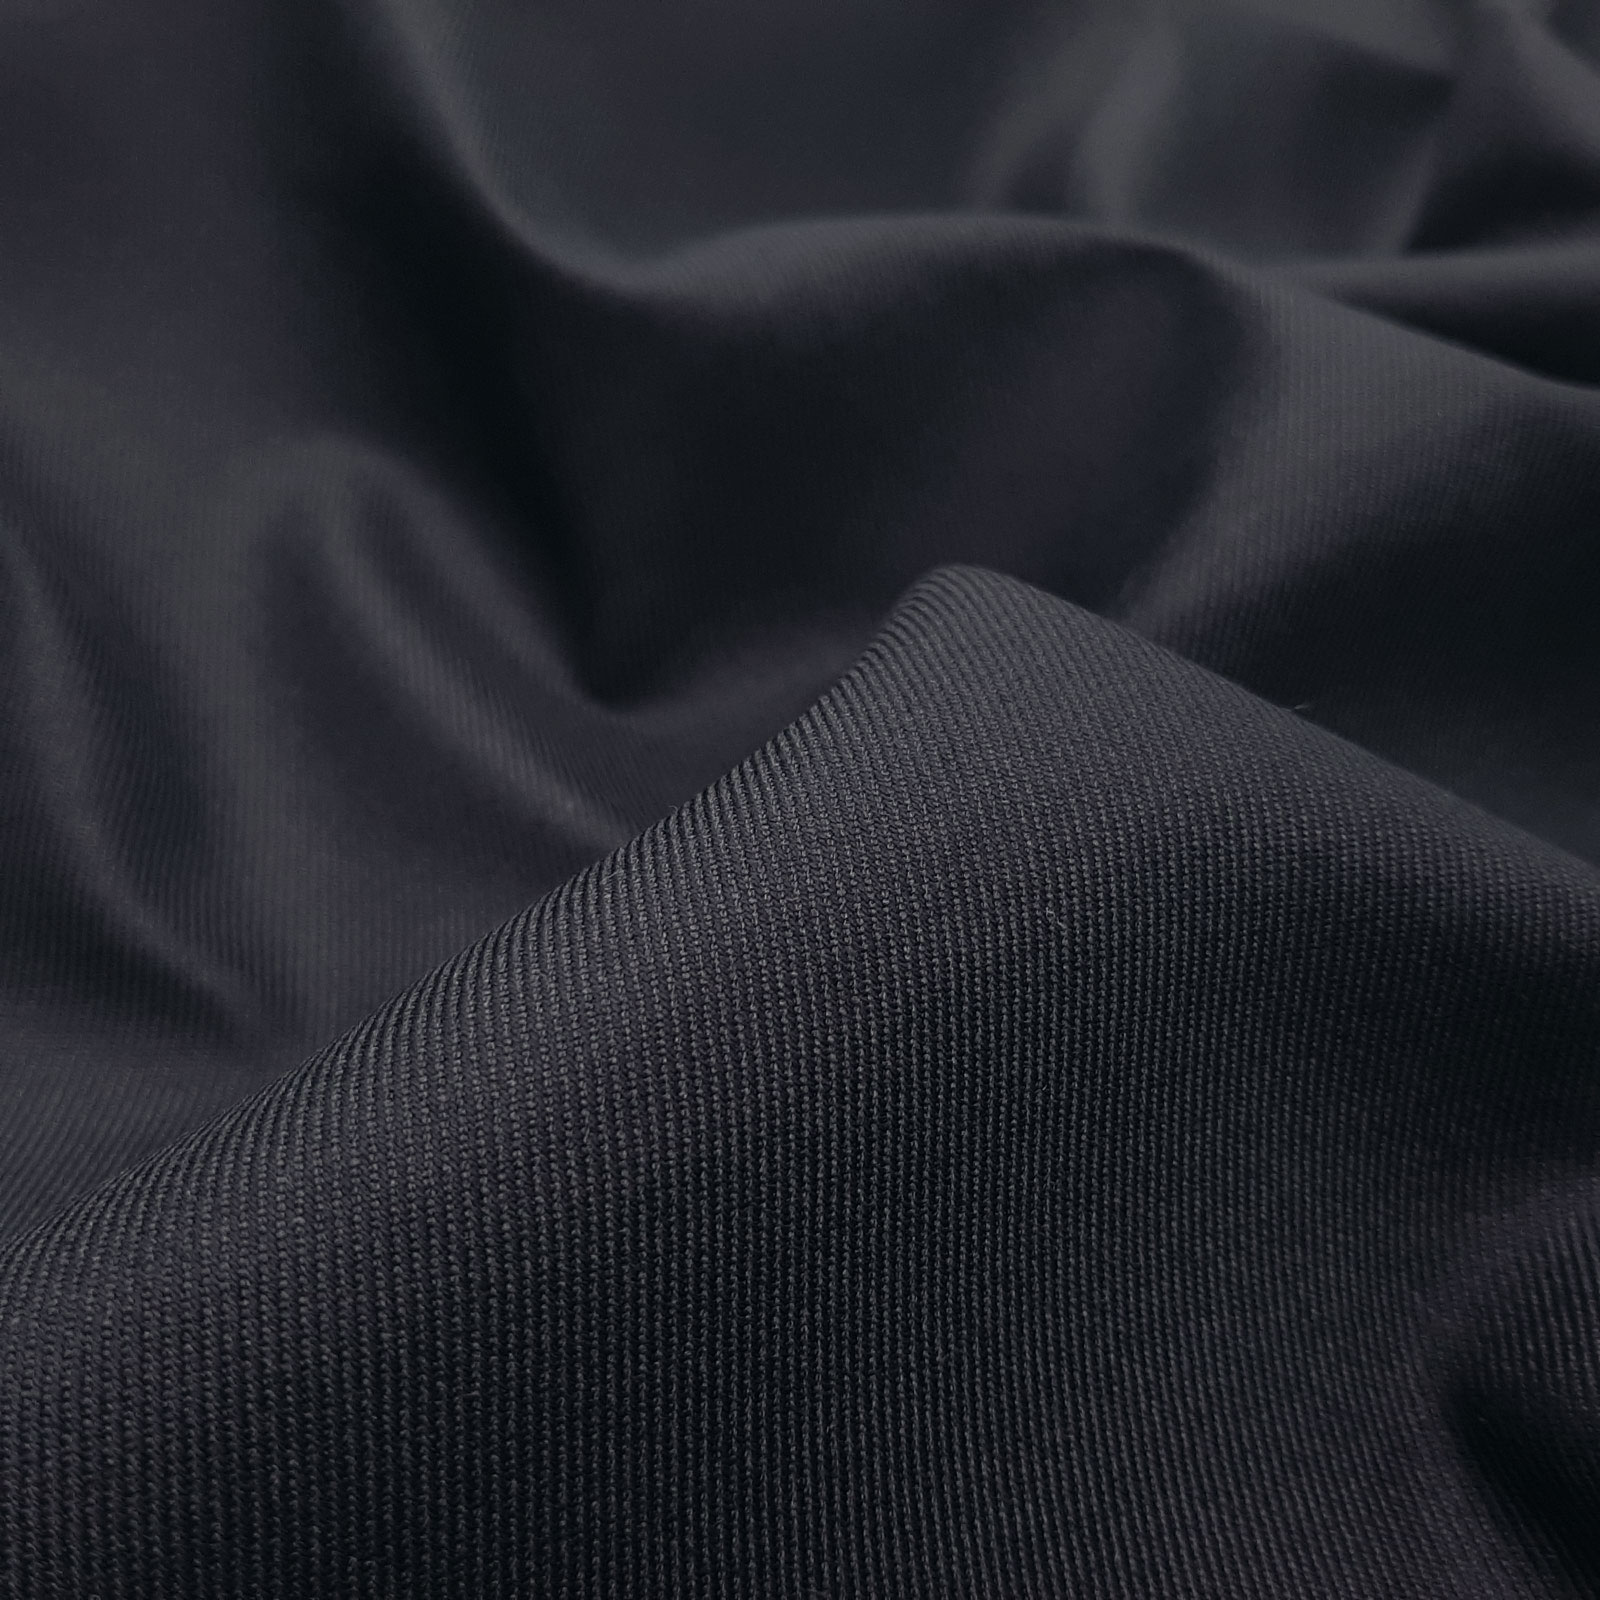 Ivo - Coolmax® Doble Cara Bonding - Azul Marino Oscuro / Negro